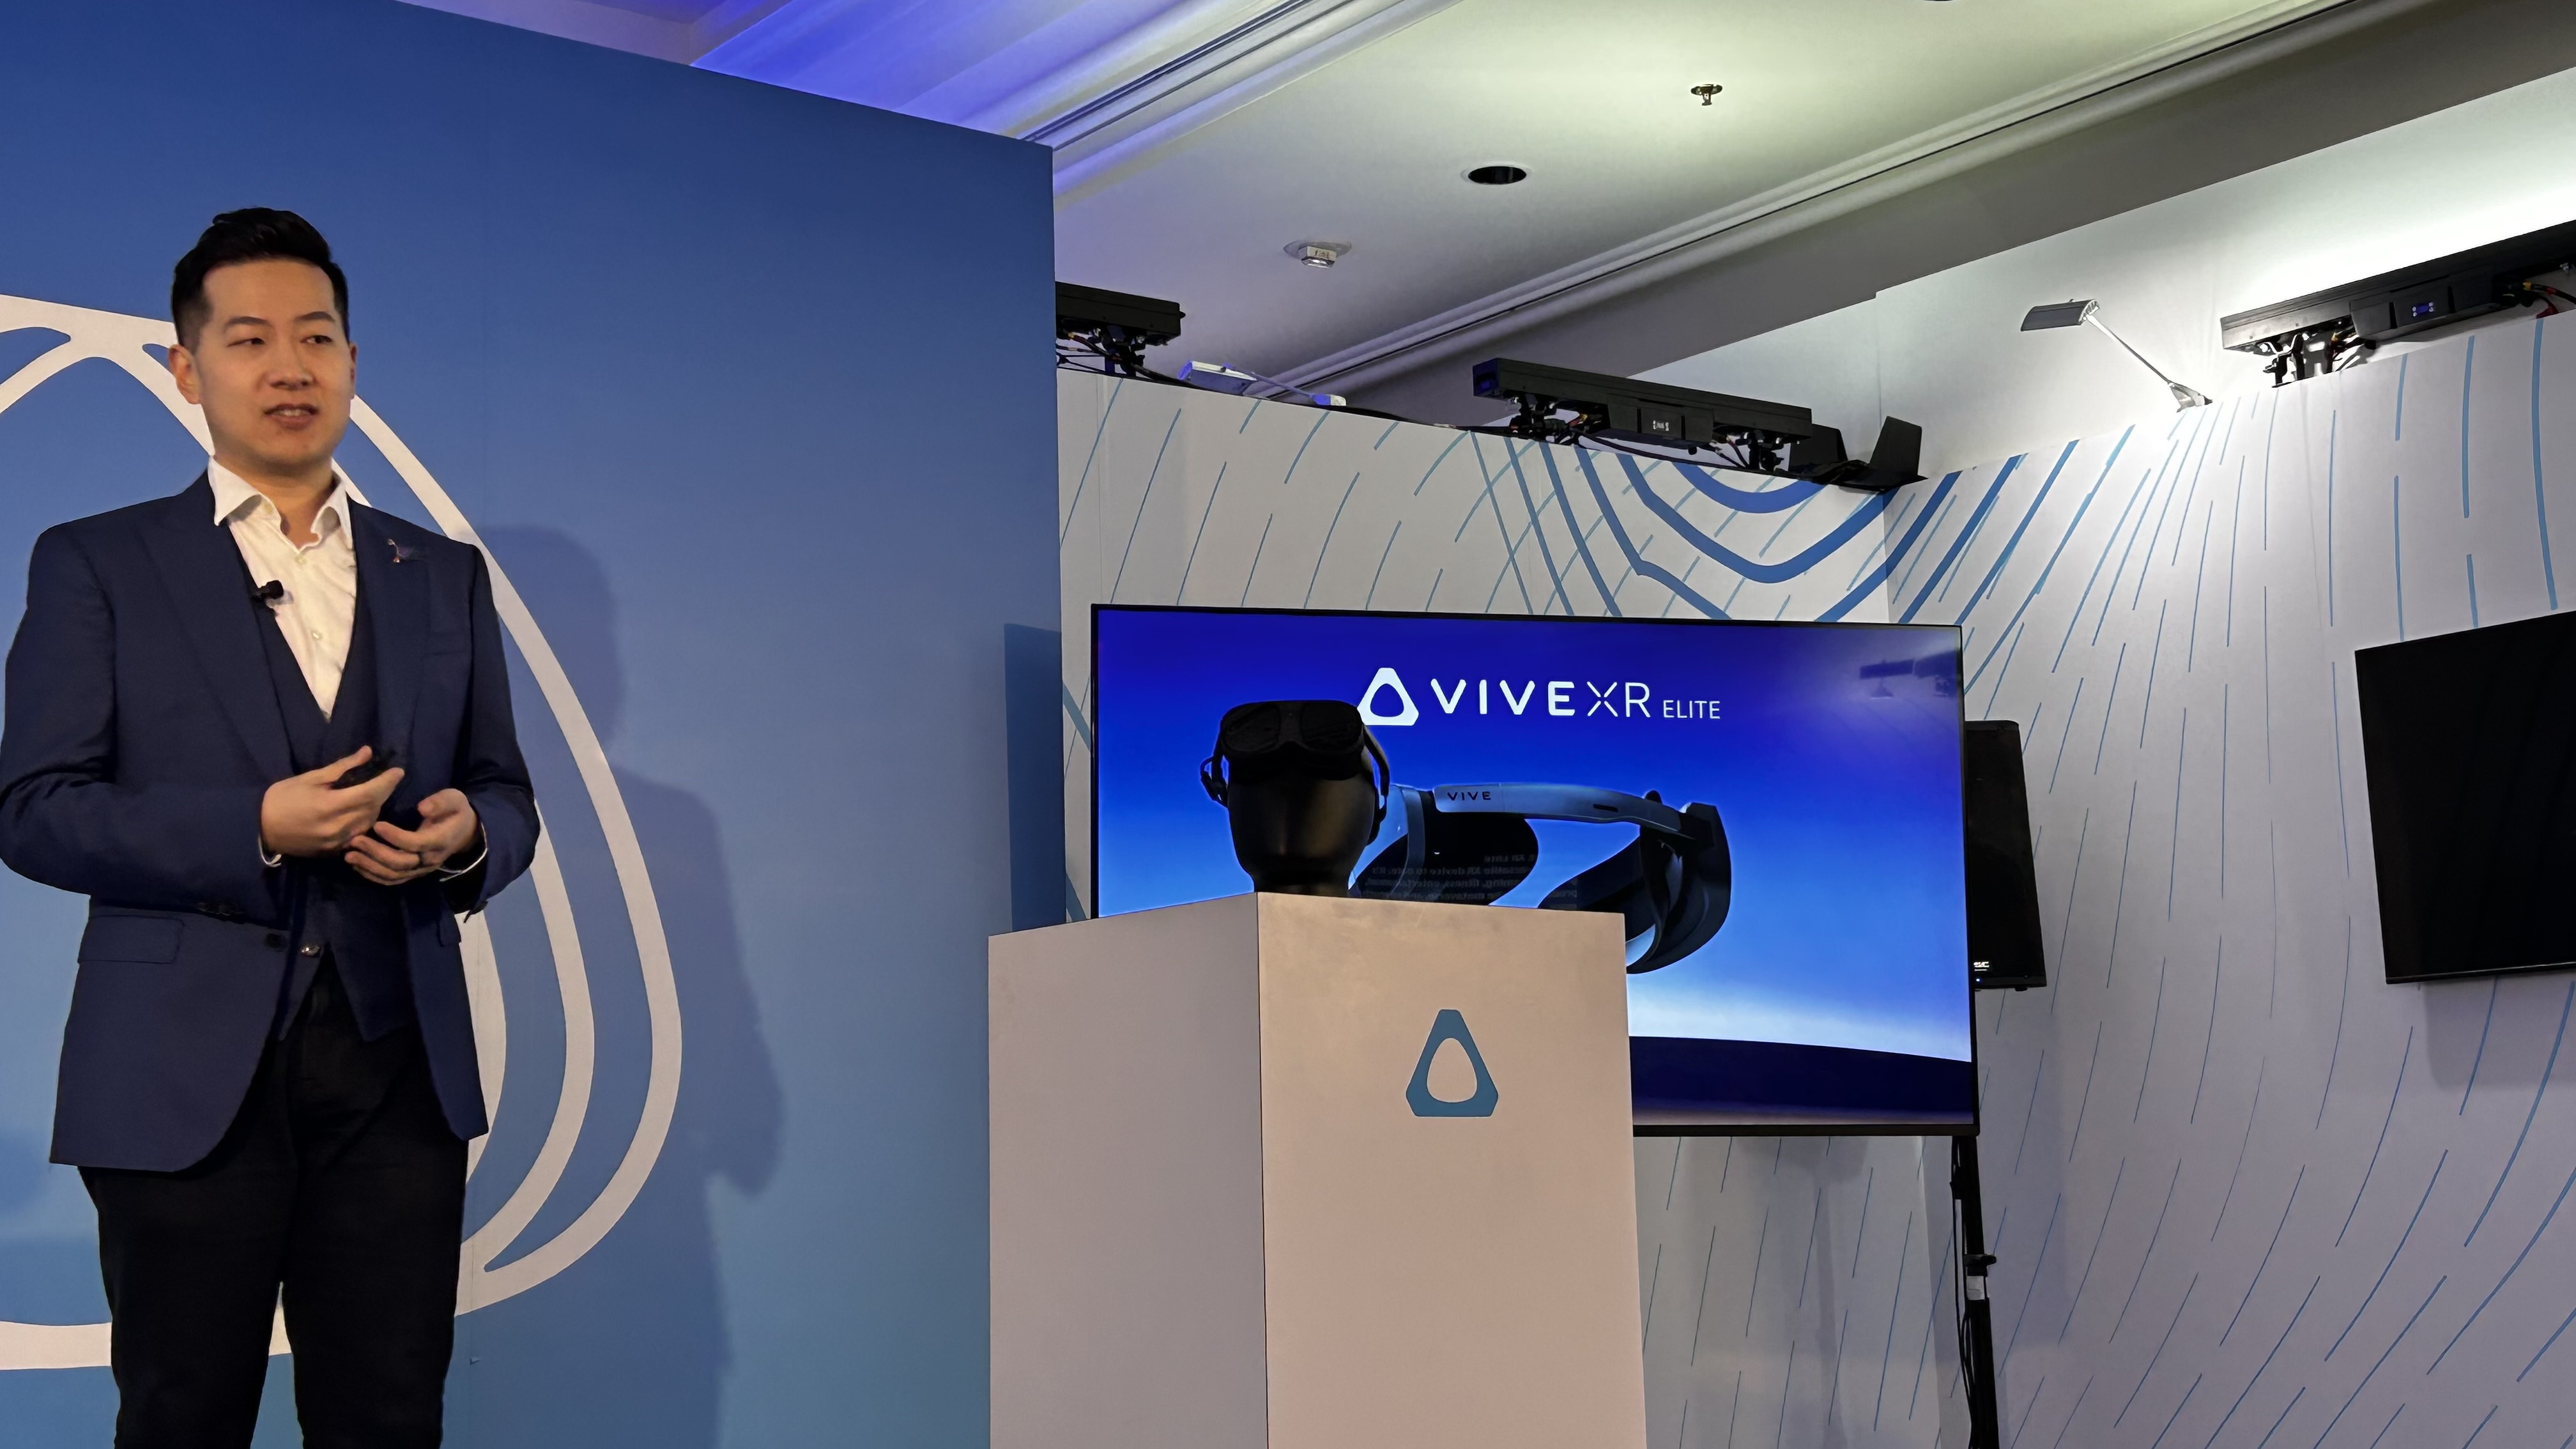 HTC Vive XR Elite virtual reality system